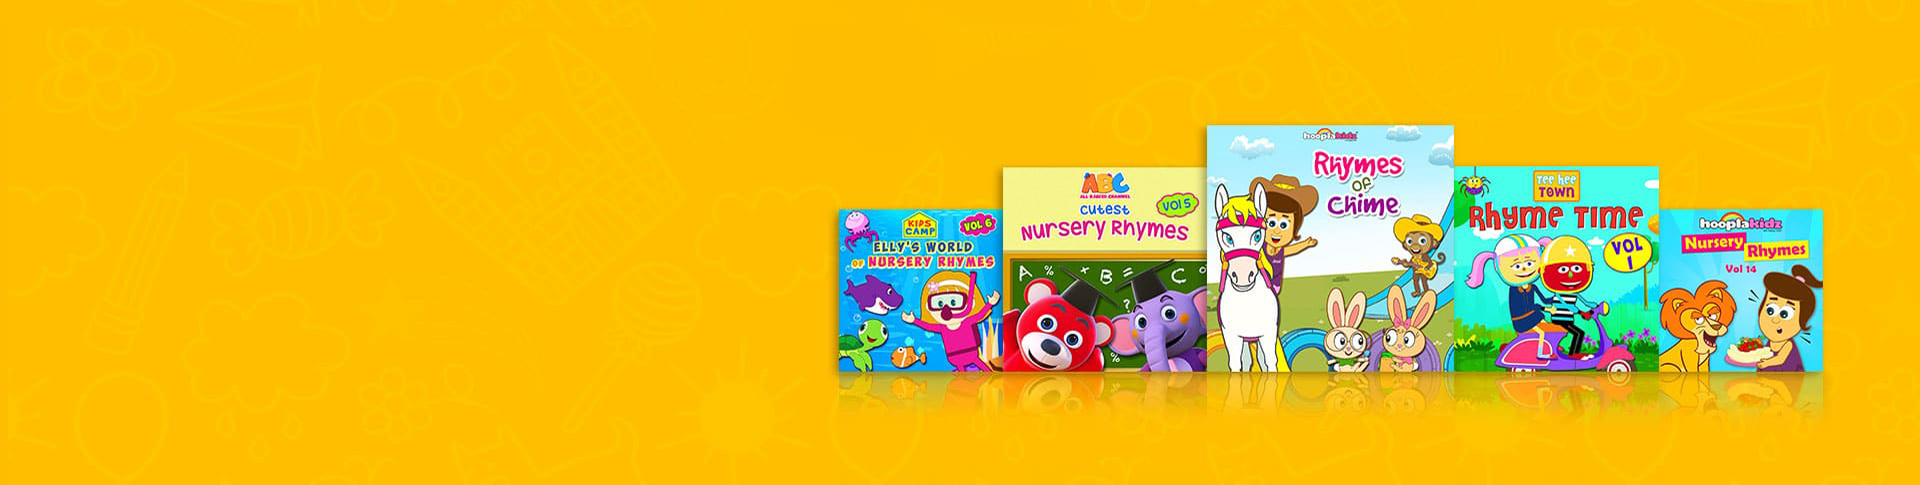 Hooplakidz nursery rhymes for kids banner2